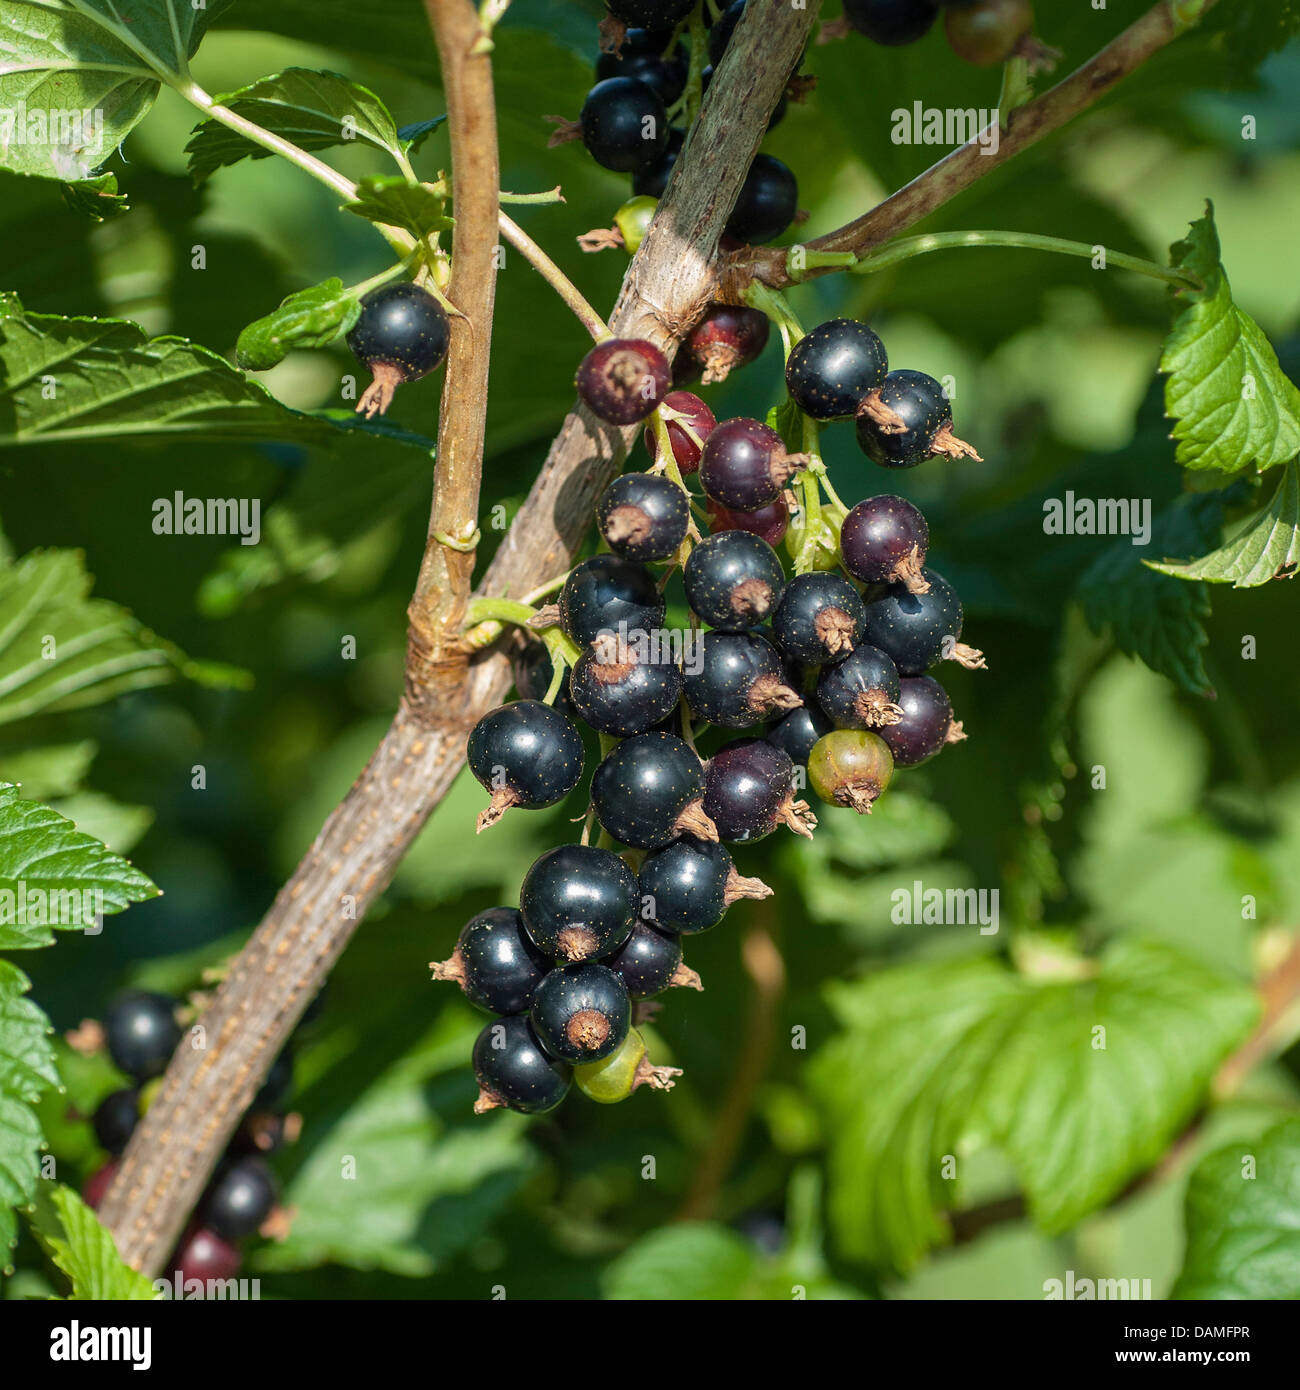 Europäische schwarze Johannisbeere (Ribes Nigrum 'Ometa', Ribes Nigrum Ometa), Sorte Ometa Stockfoto